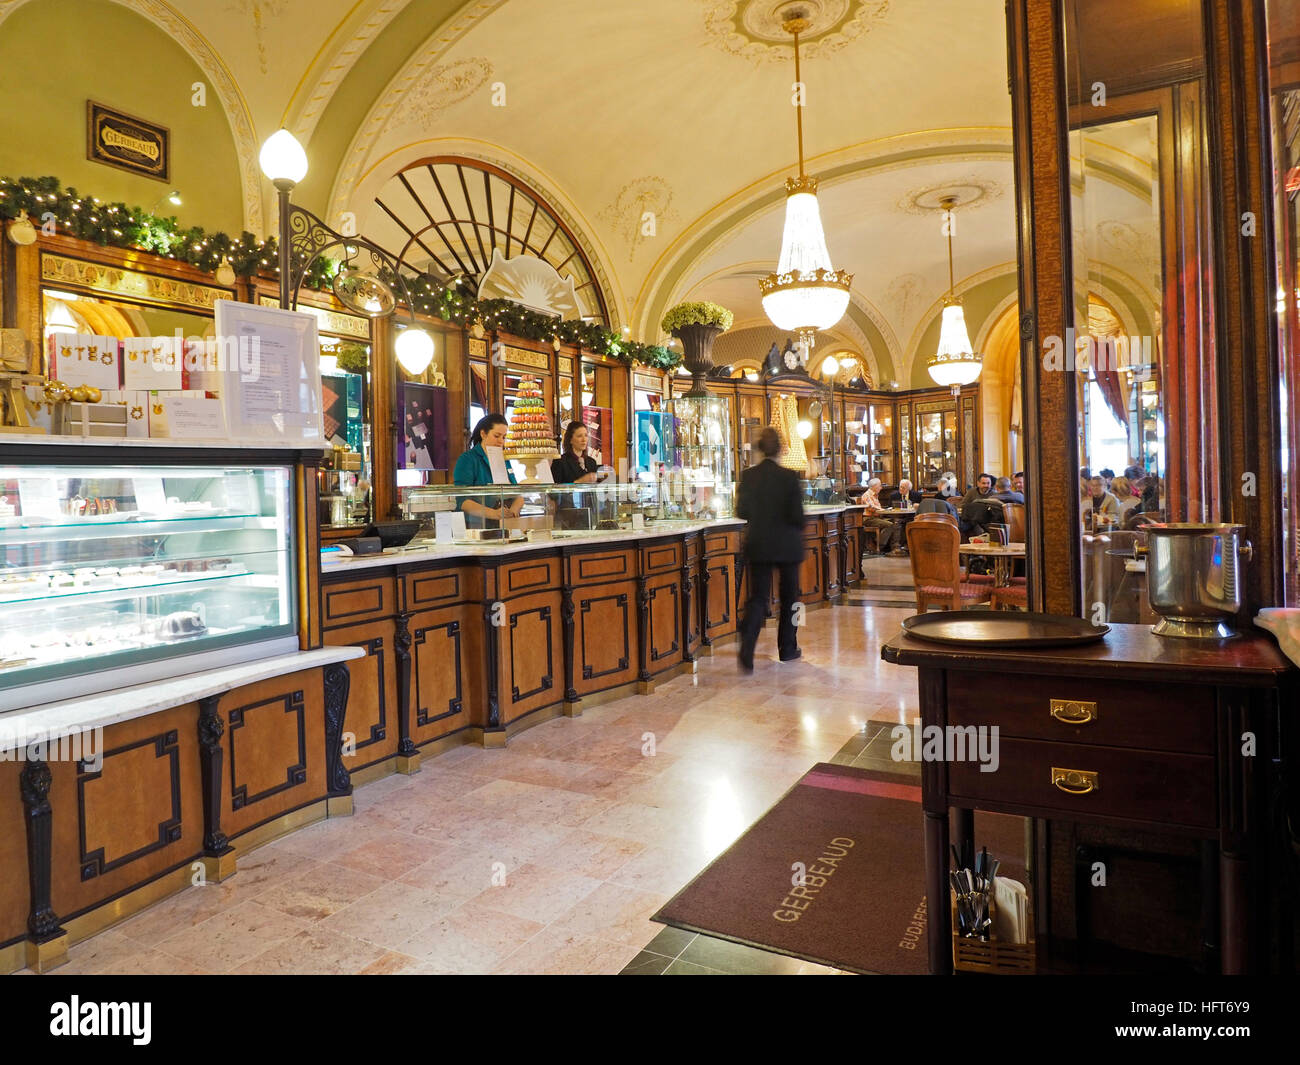 La décoration classique du célèbre café Gerbeaud Kavehaz dans le centre-ville de Budapest, Hongrie Banque D'Images